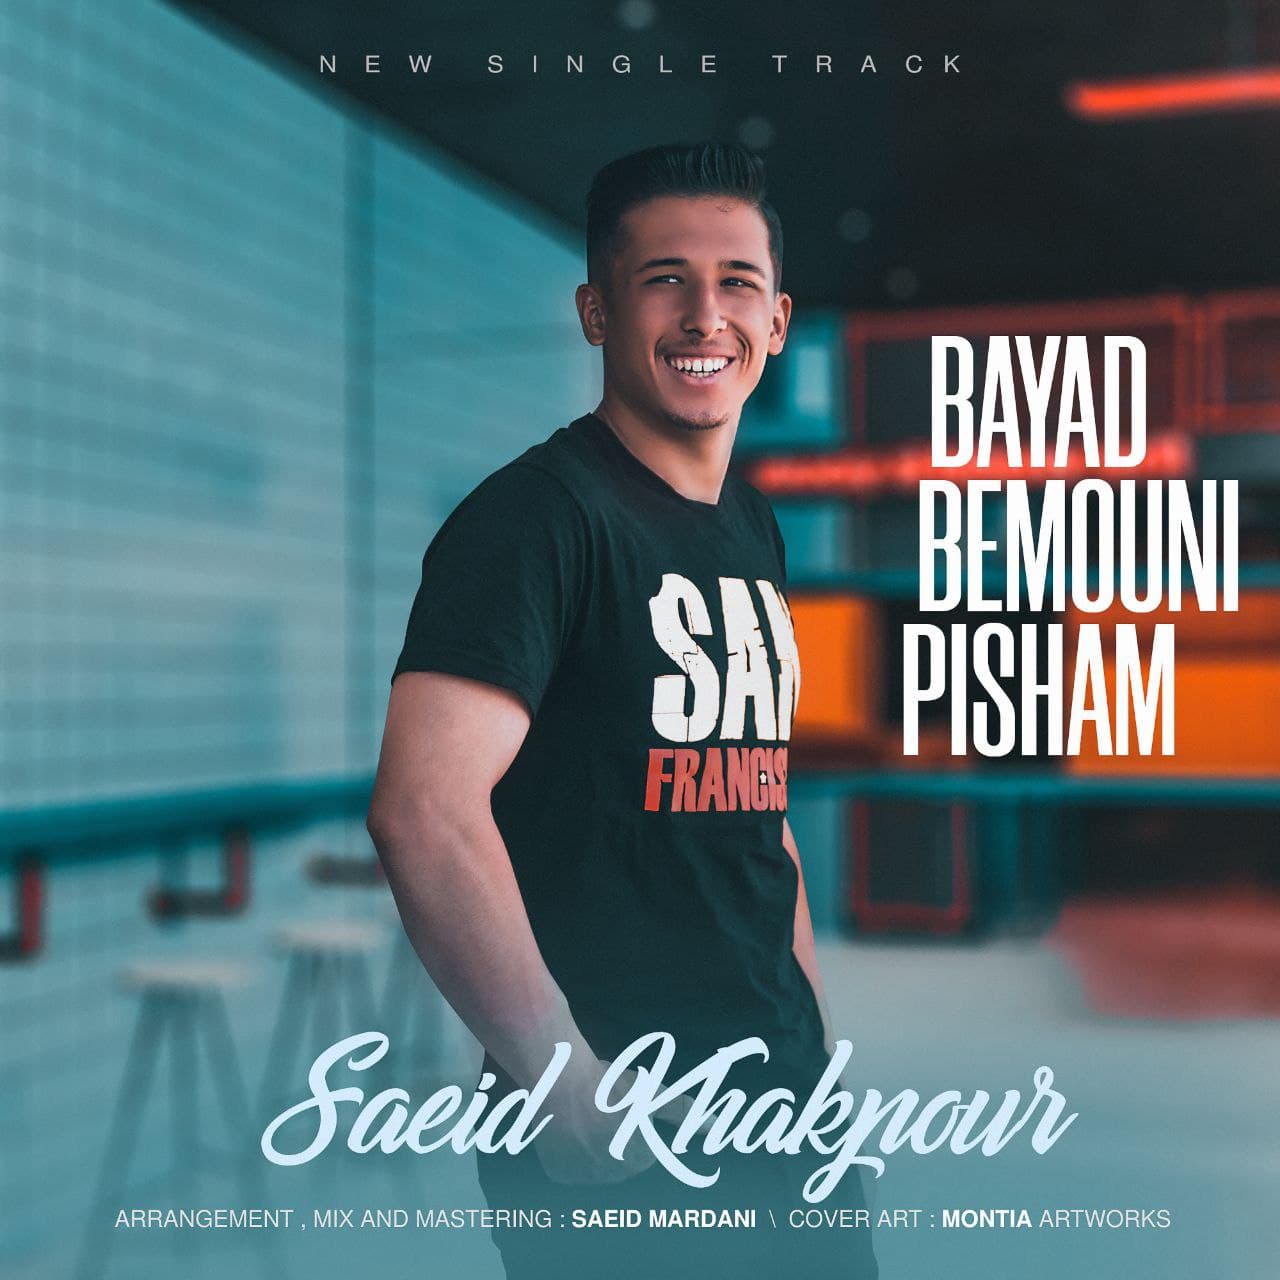 Saeid Khakpour – Bayad Bemouni Pisham